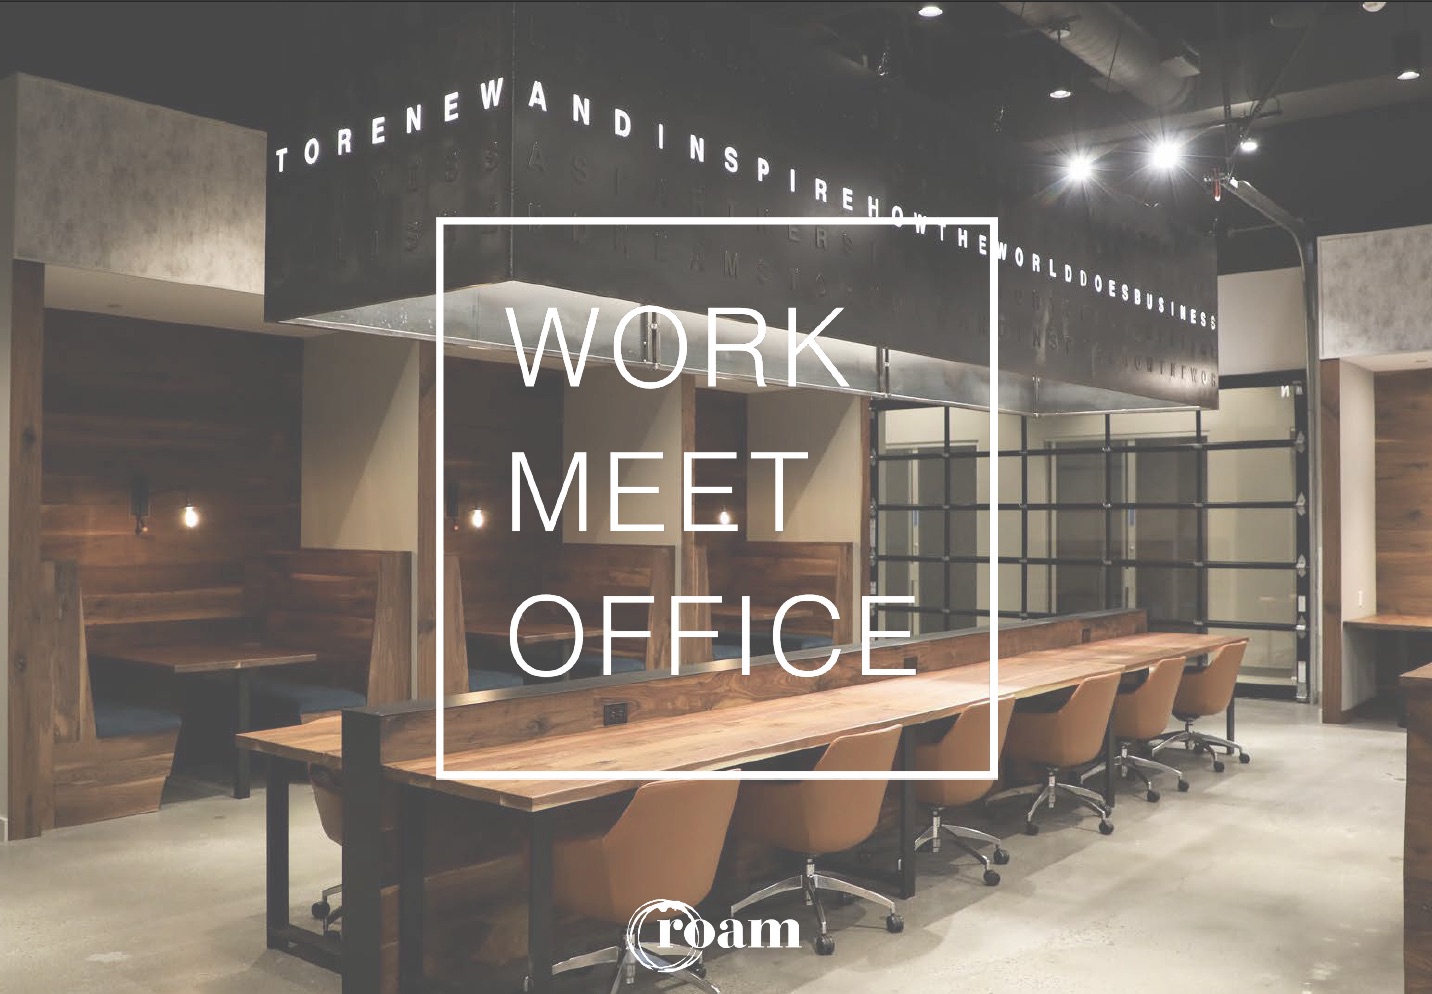 Work, Meet + Office at Roam